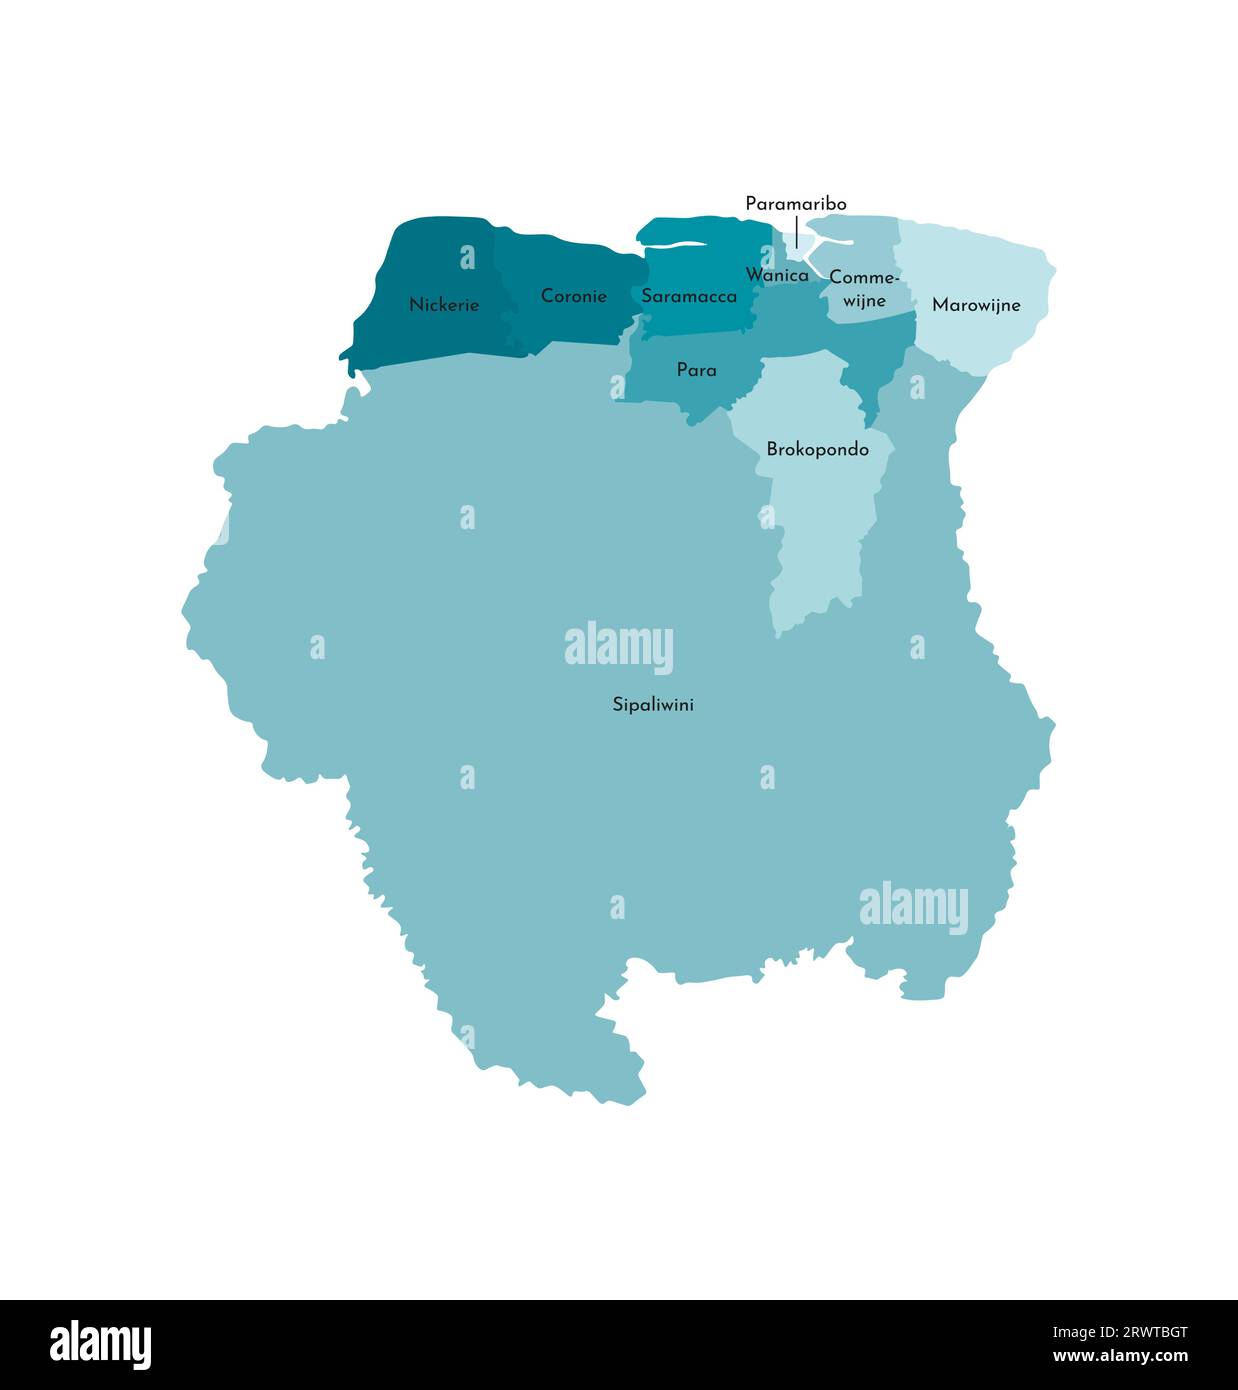 Vektorisolierte Darstellung einer vereinfachten Verwaltungskarte von Suriname. Grenzen und Namen der Bezirke (Regionen). Farbenfroher khakifarbener Silhouett Stock Vektor